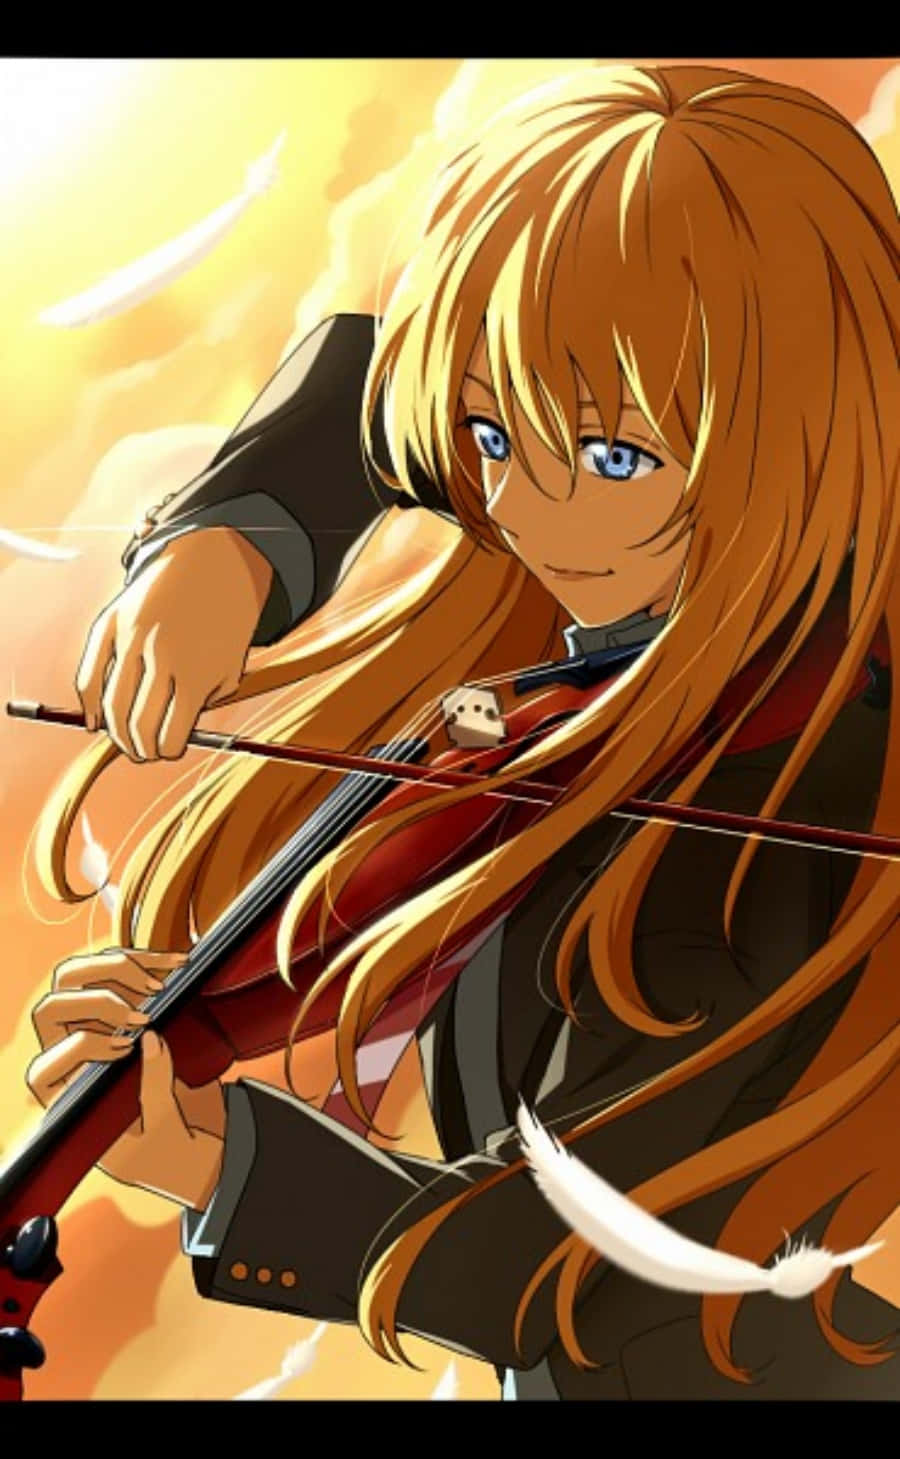 Letue Bugie In Aprile: Immagini Anime Di Kaori Al Violino Per Iphone. Sfondo